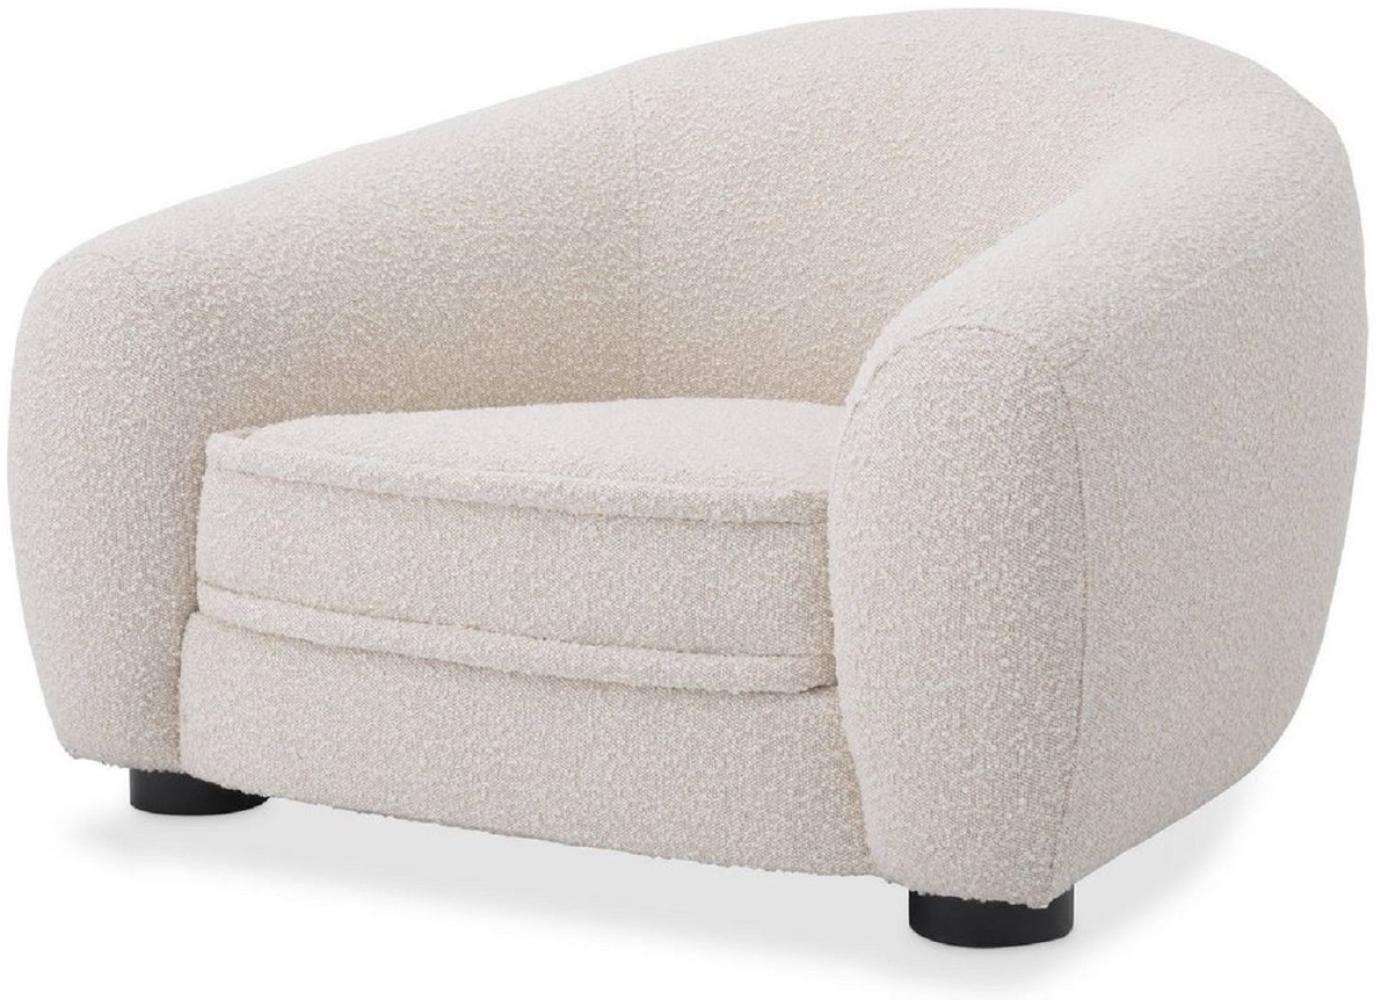 Casa Padrino Luxus Sessel Hell Cremefarben / Schwarz 110 x 95 x H. 70 cm - Wohnzimmer Sessel mit gebogener Rückenlehne - Luxus Möbel Bild 1